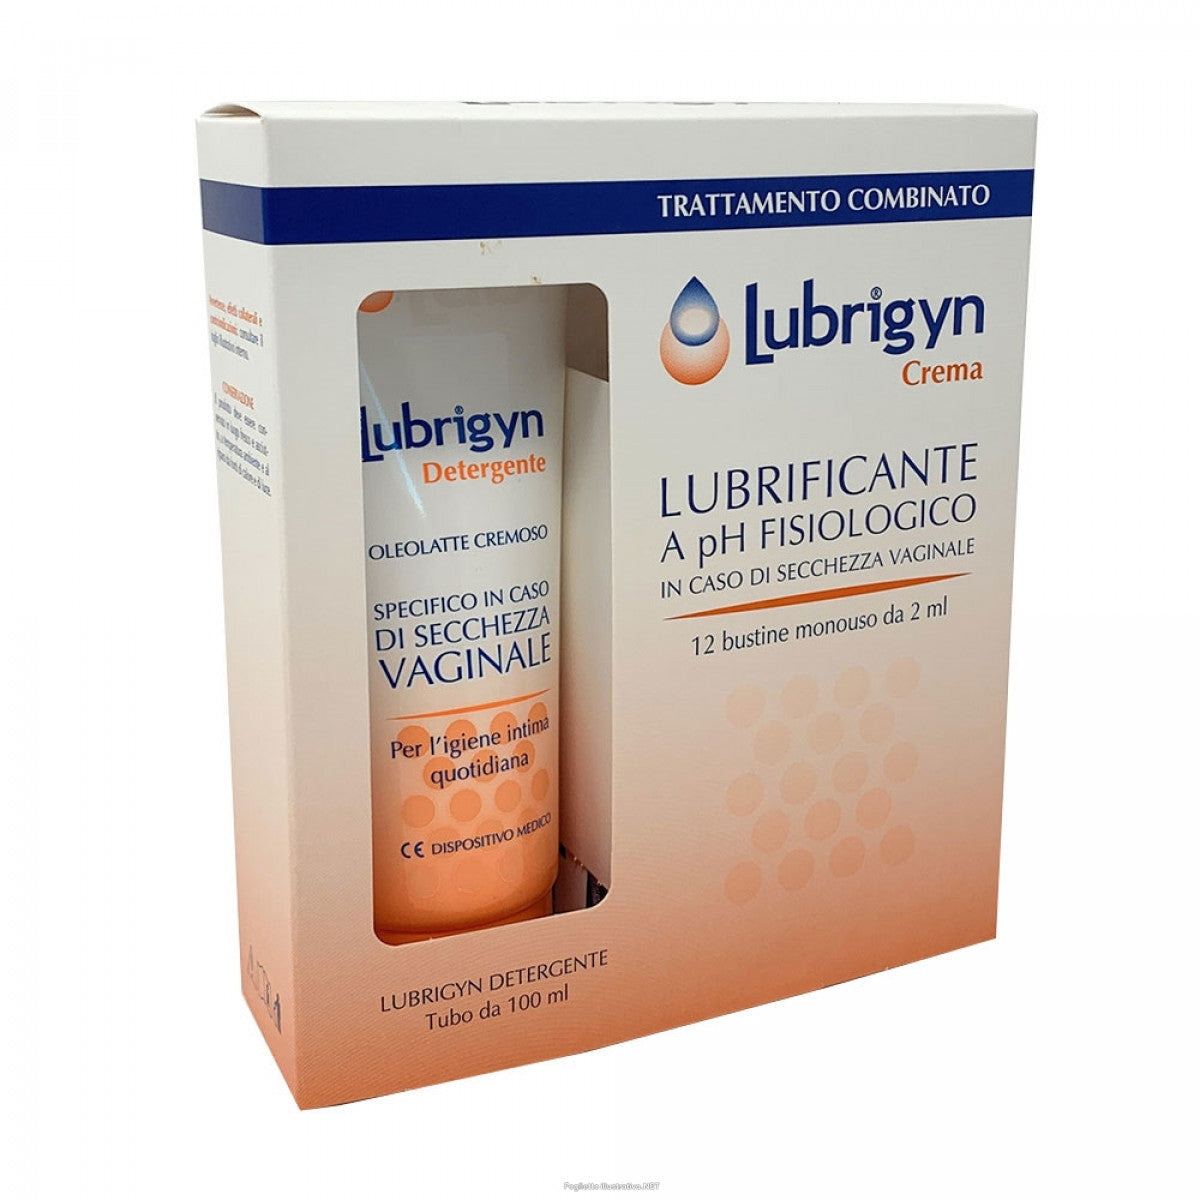 Lubrichnn Crema Kit + detergent